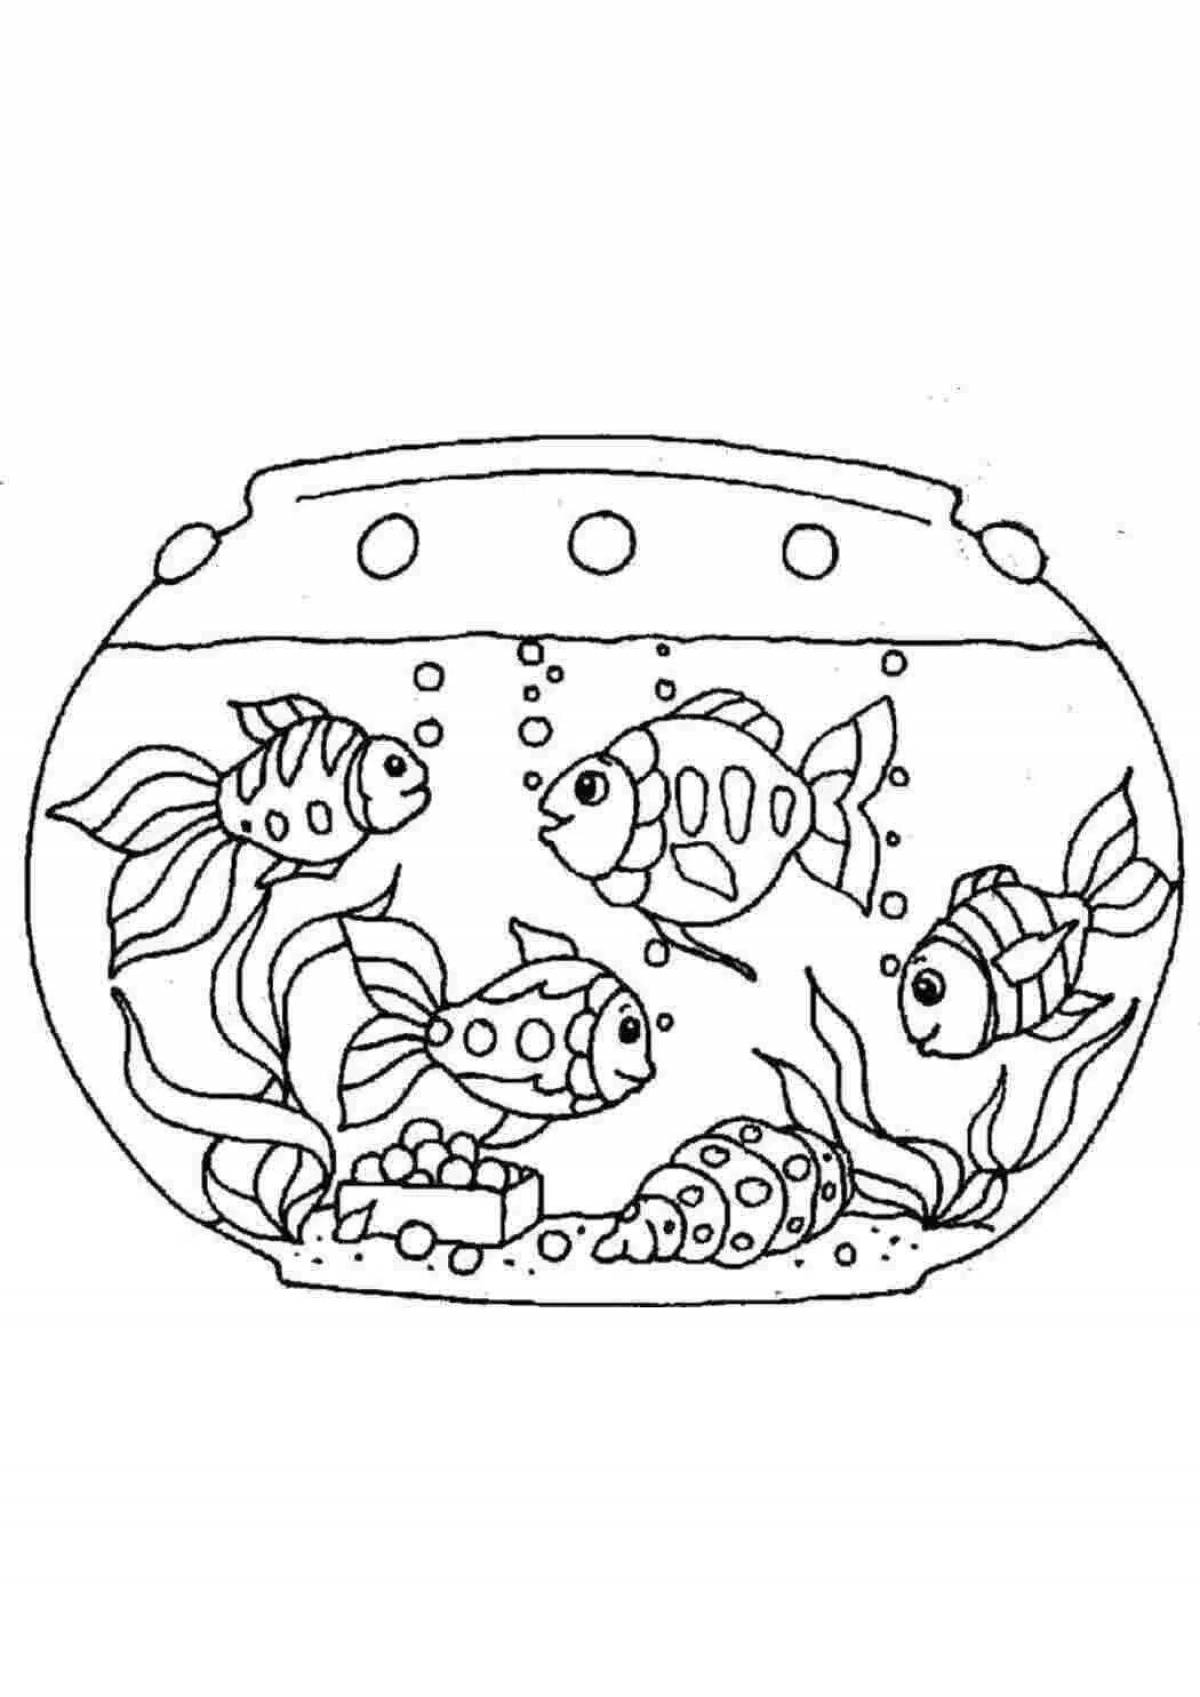 Magic aquariumdagi balyktar coloring book